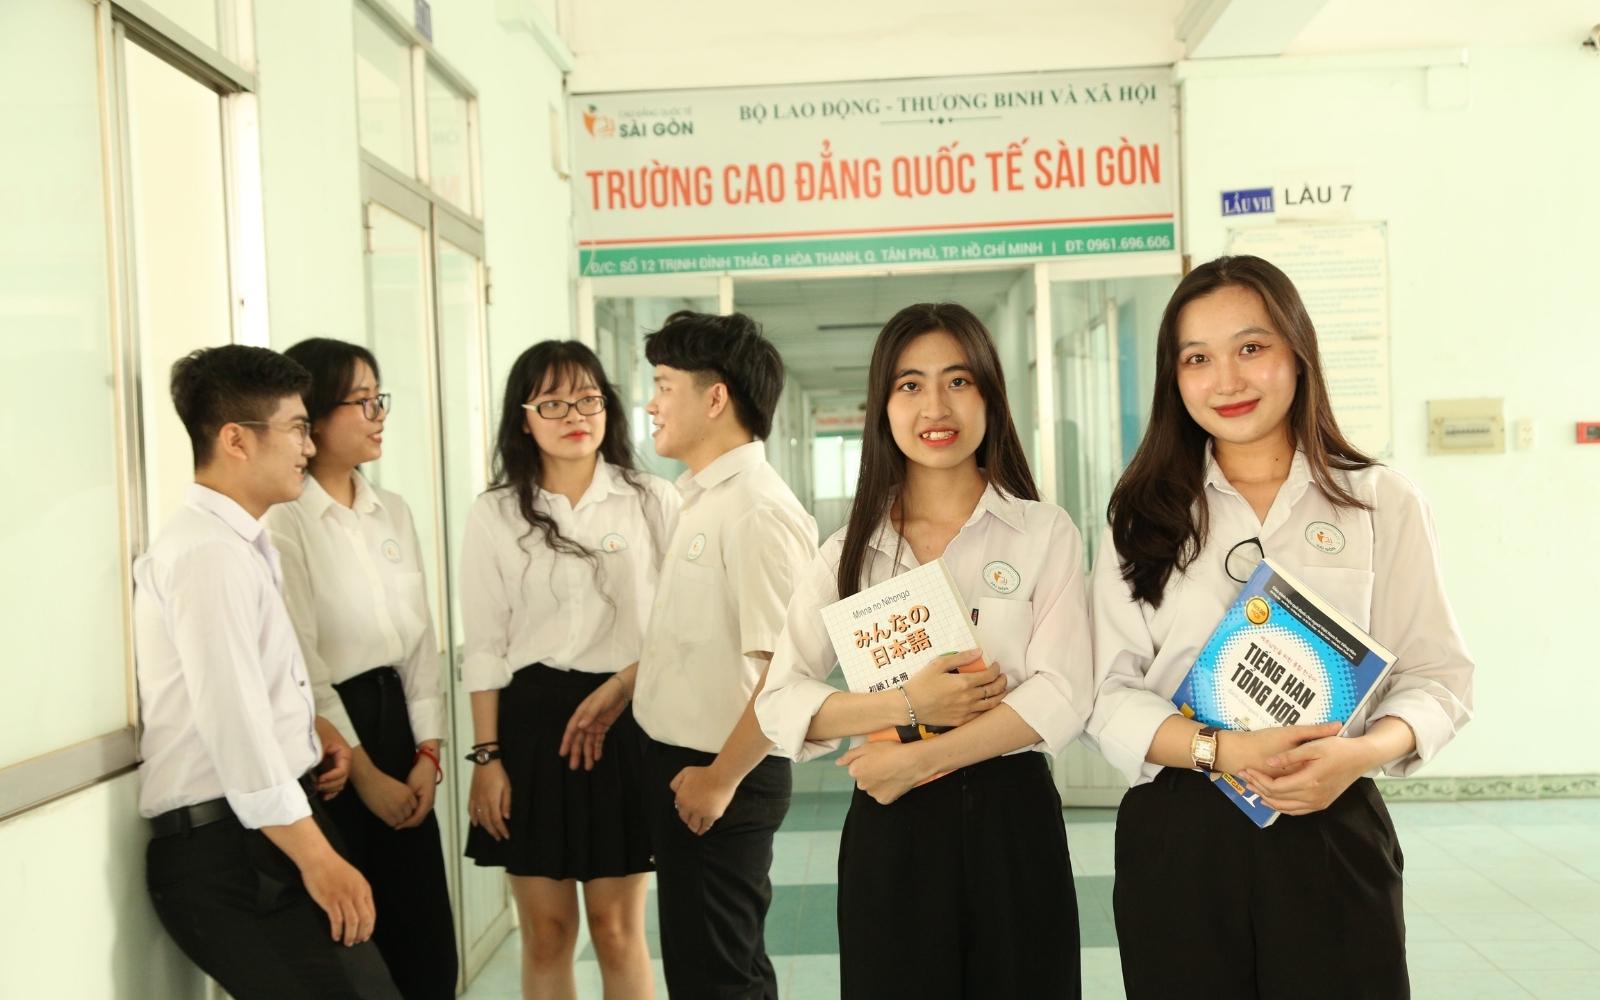 Ứng tuyển học bạ tại Cao đẳng Quốc tế Sài Gòn